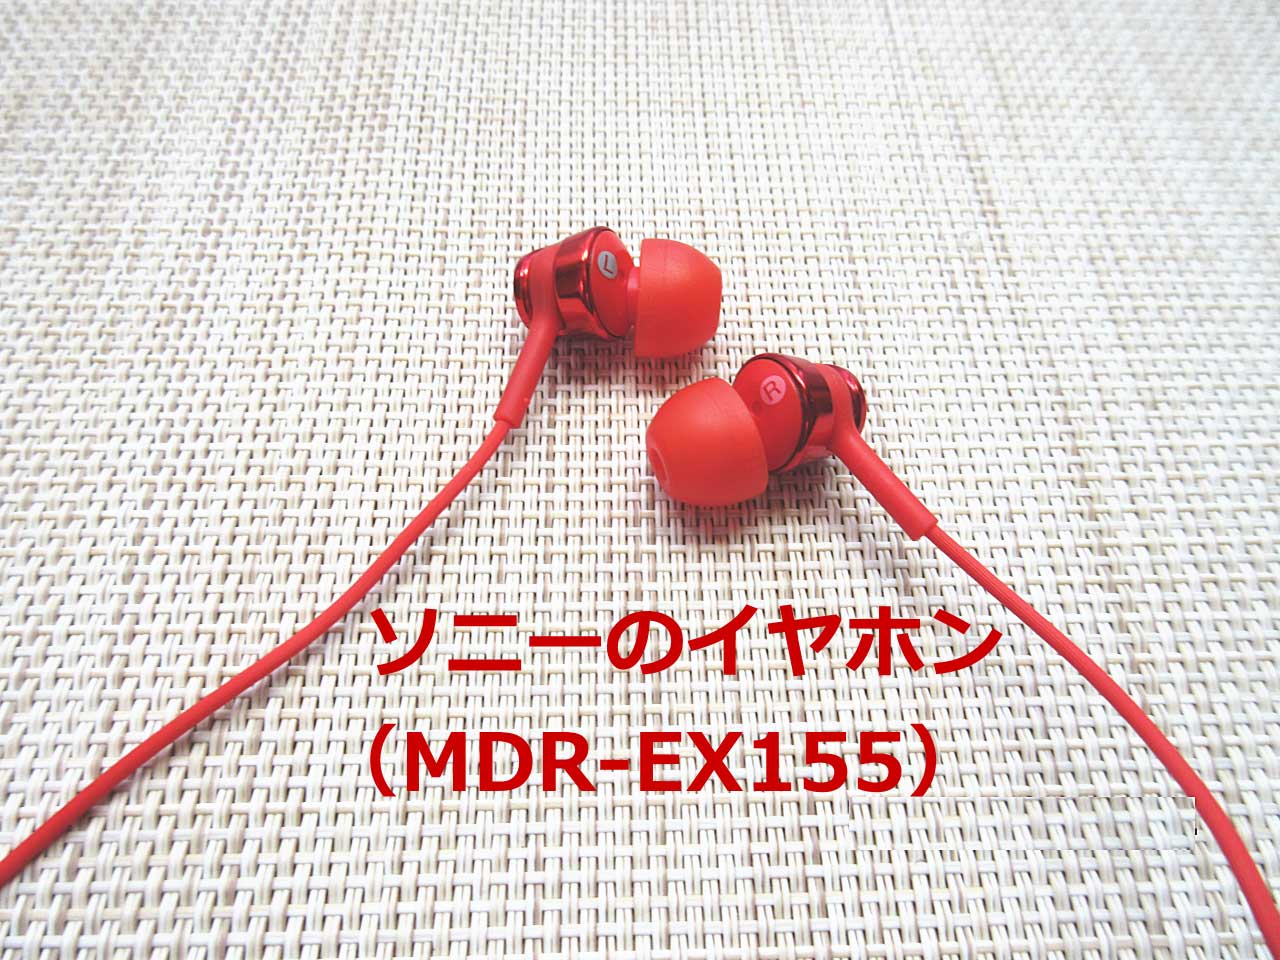 MDR-EX155